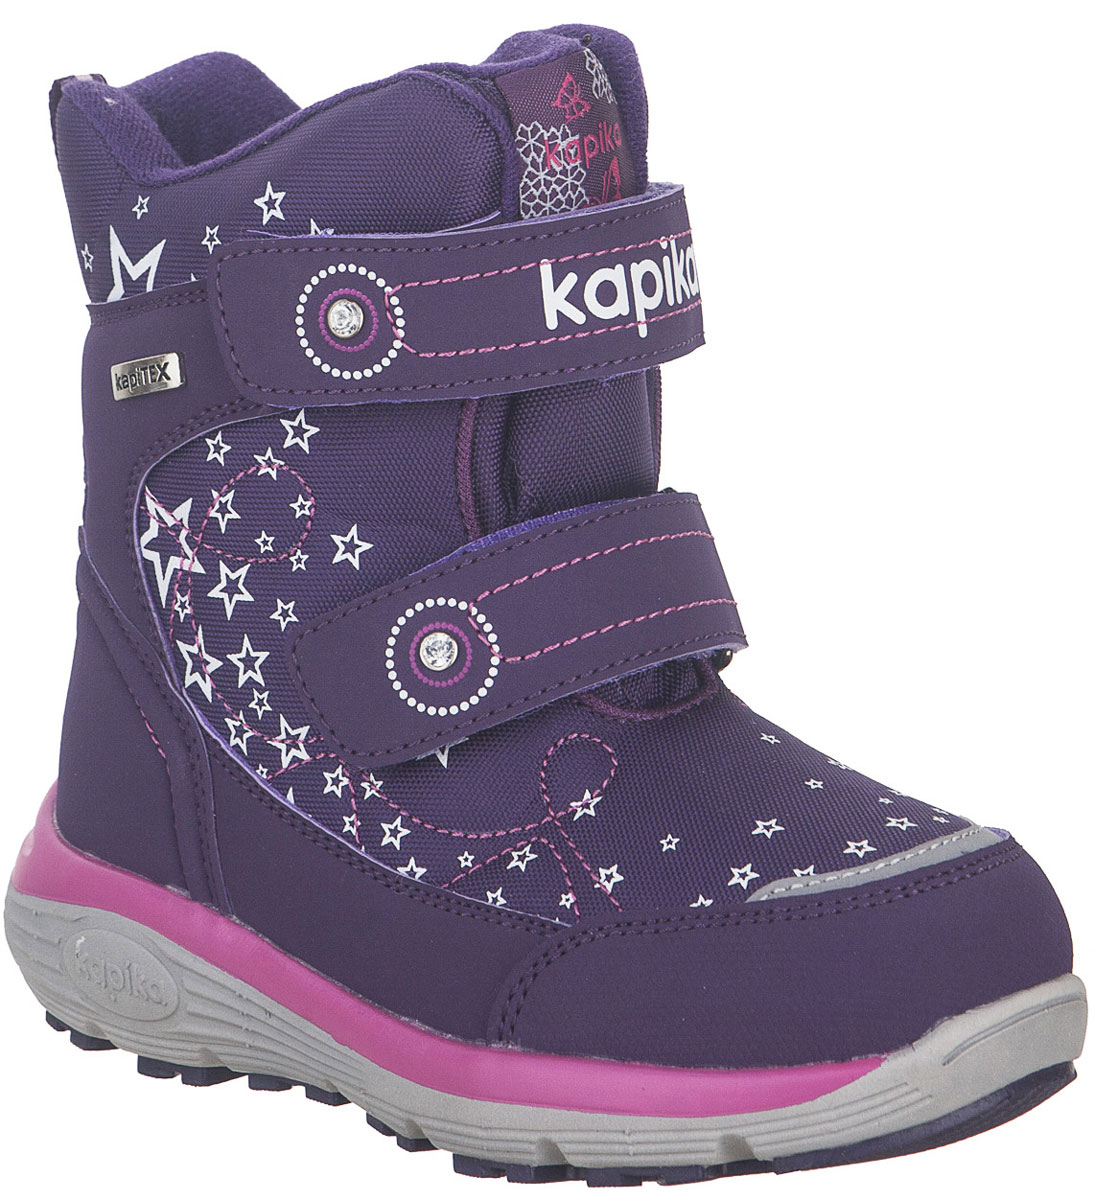 Ботинки для девочки Kapika, цвет: фиолетовый. 42255-2. Размер 30